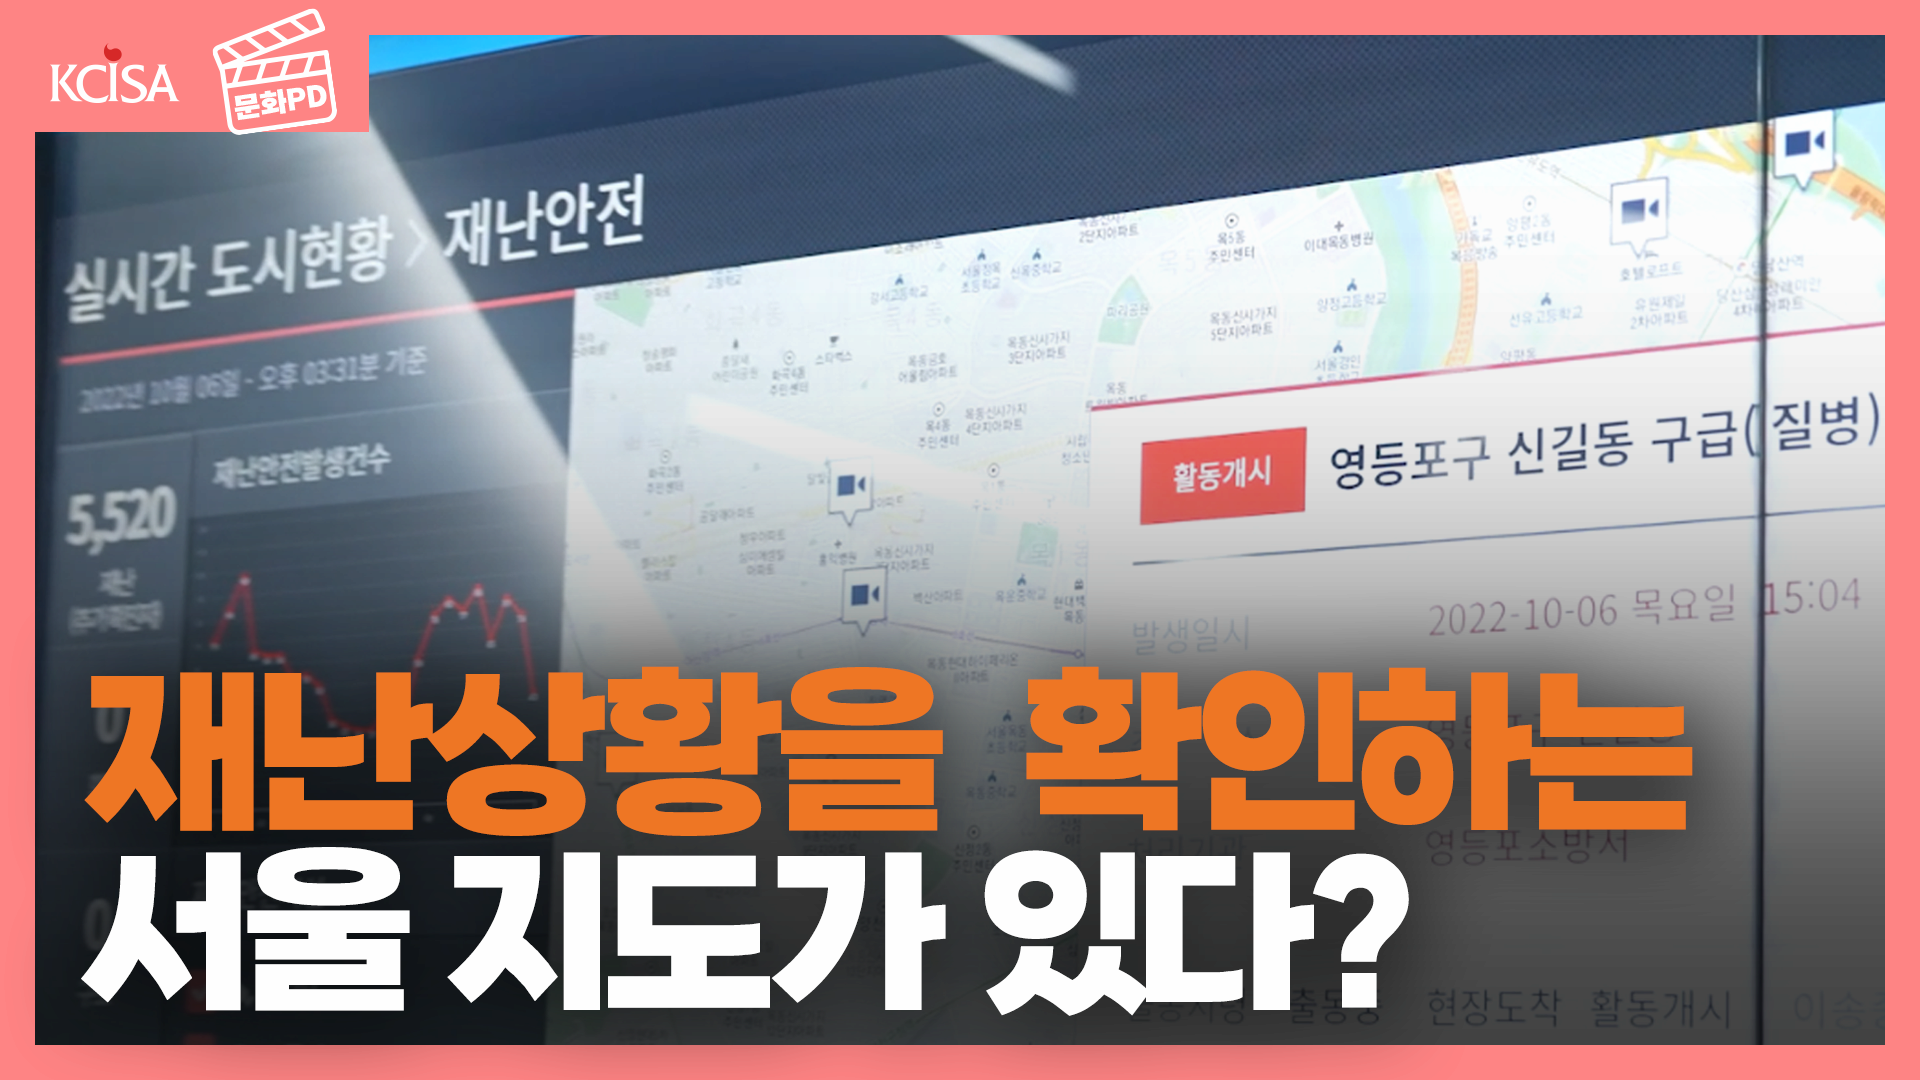 [문화PD] 서울 재난 상황을 가장 빨리 확인하는 지도가 있다! 스마트서울 전시관 후기